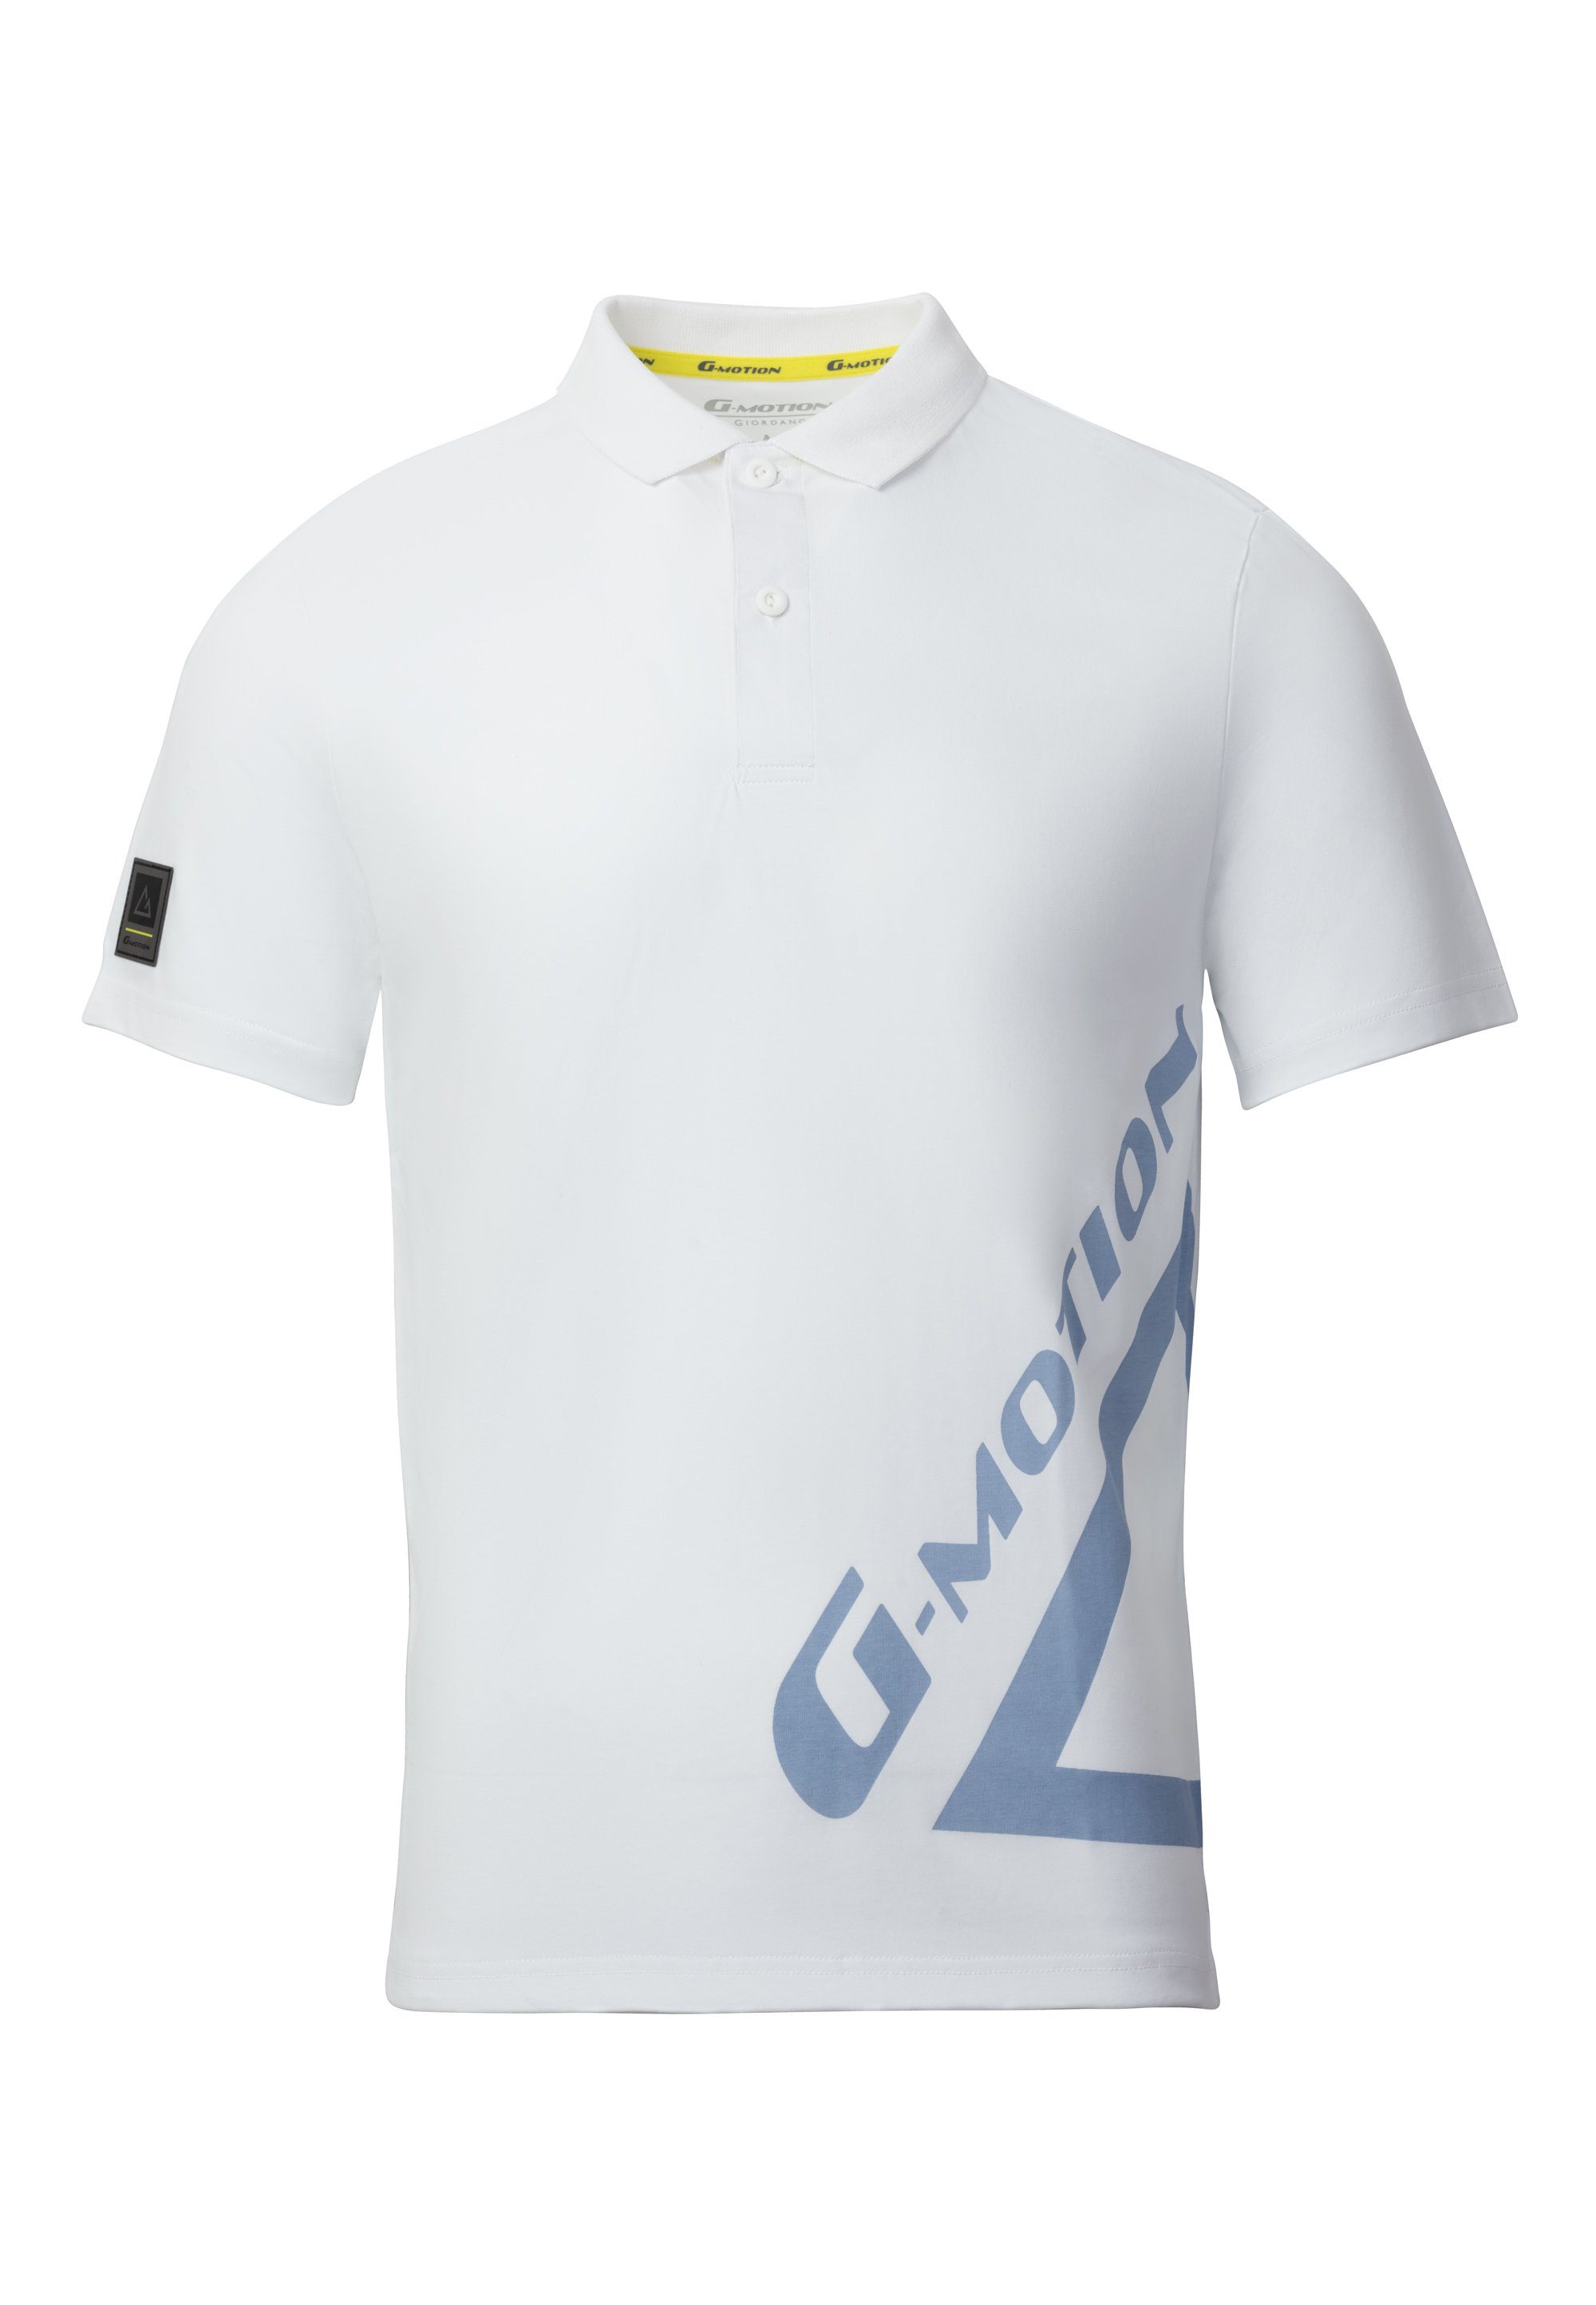 GIORDANO Poloshirt mit praktischer Quick-Dry-Funktion weiß